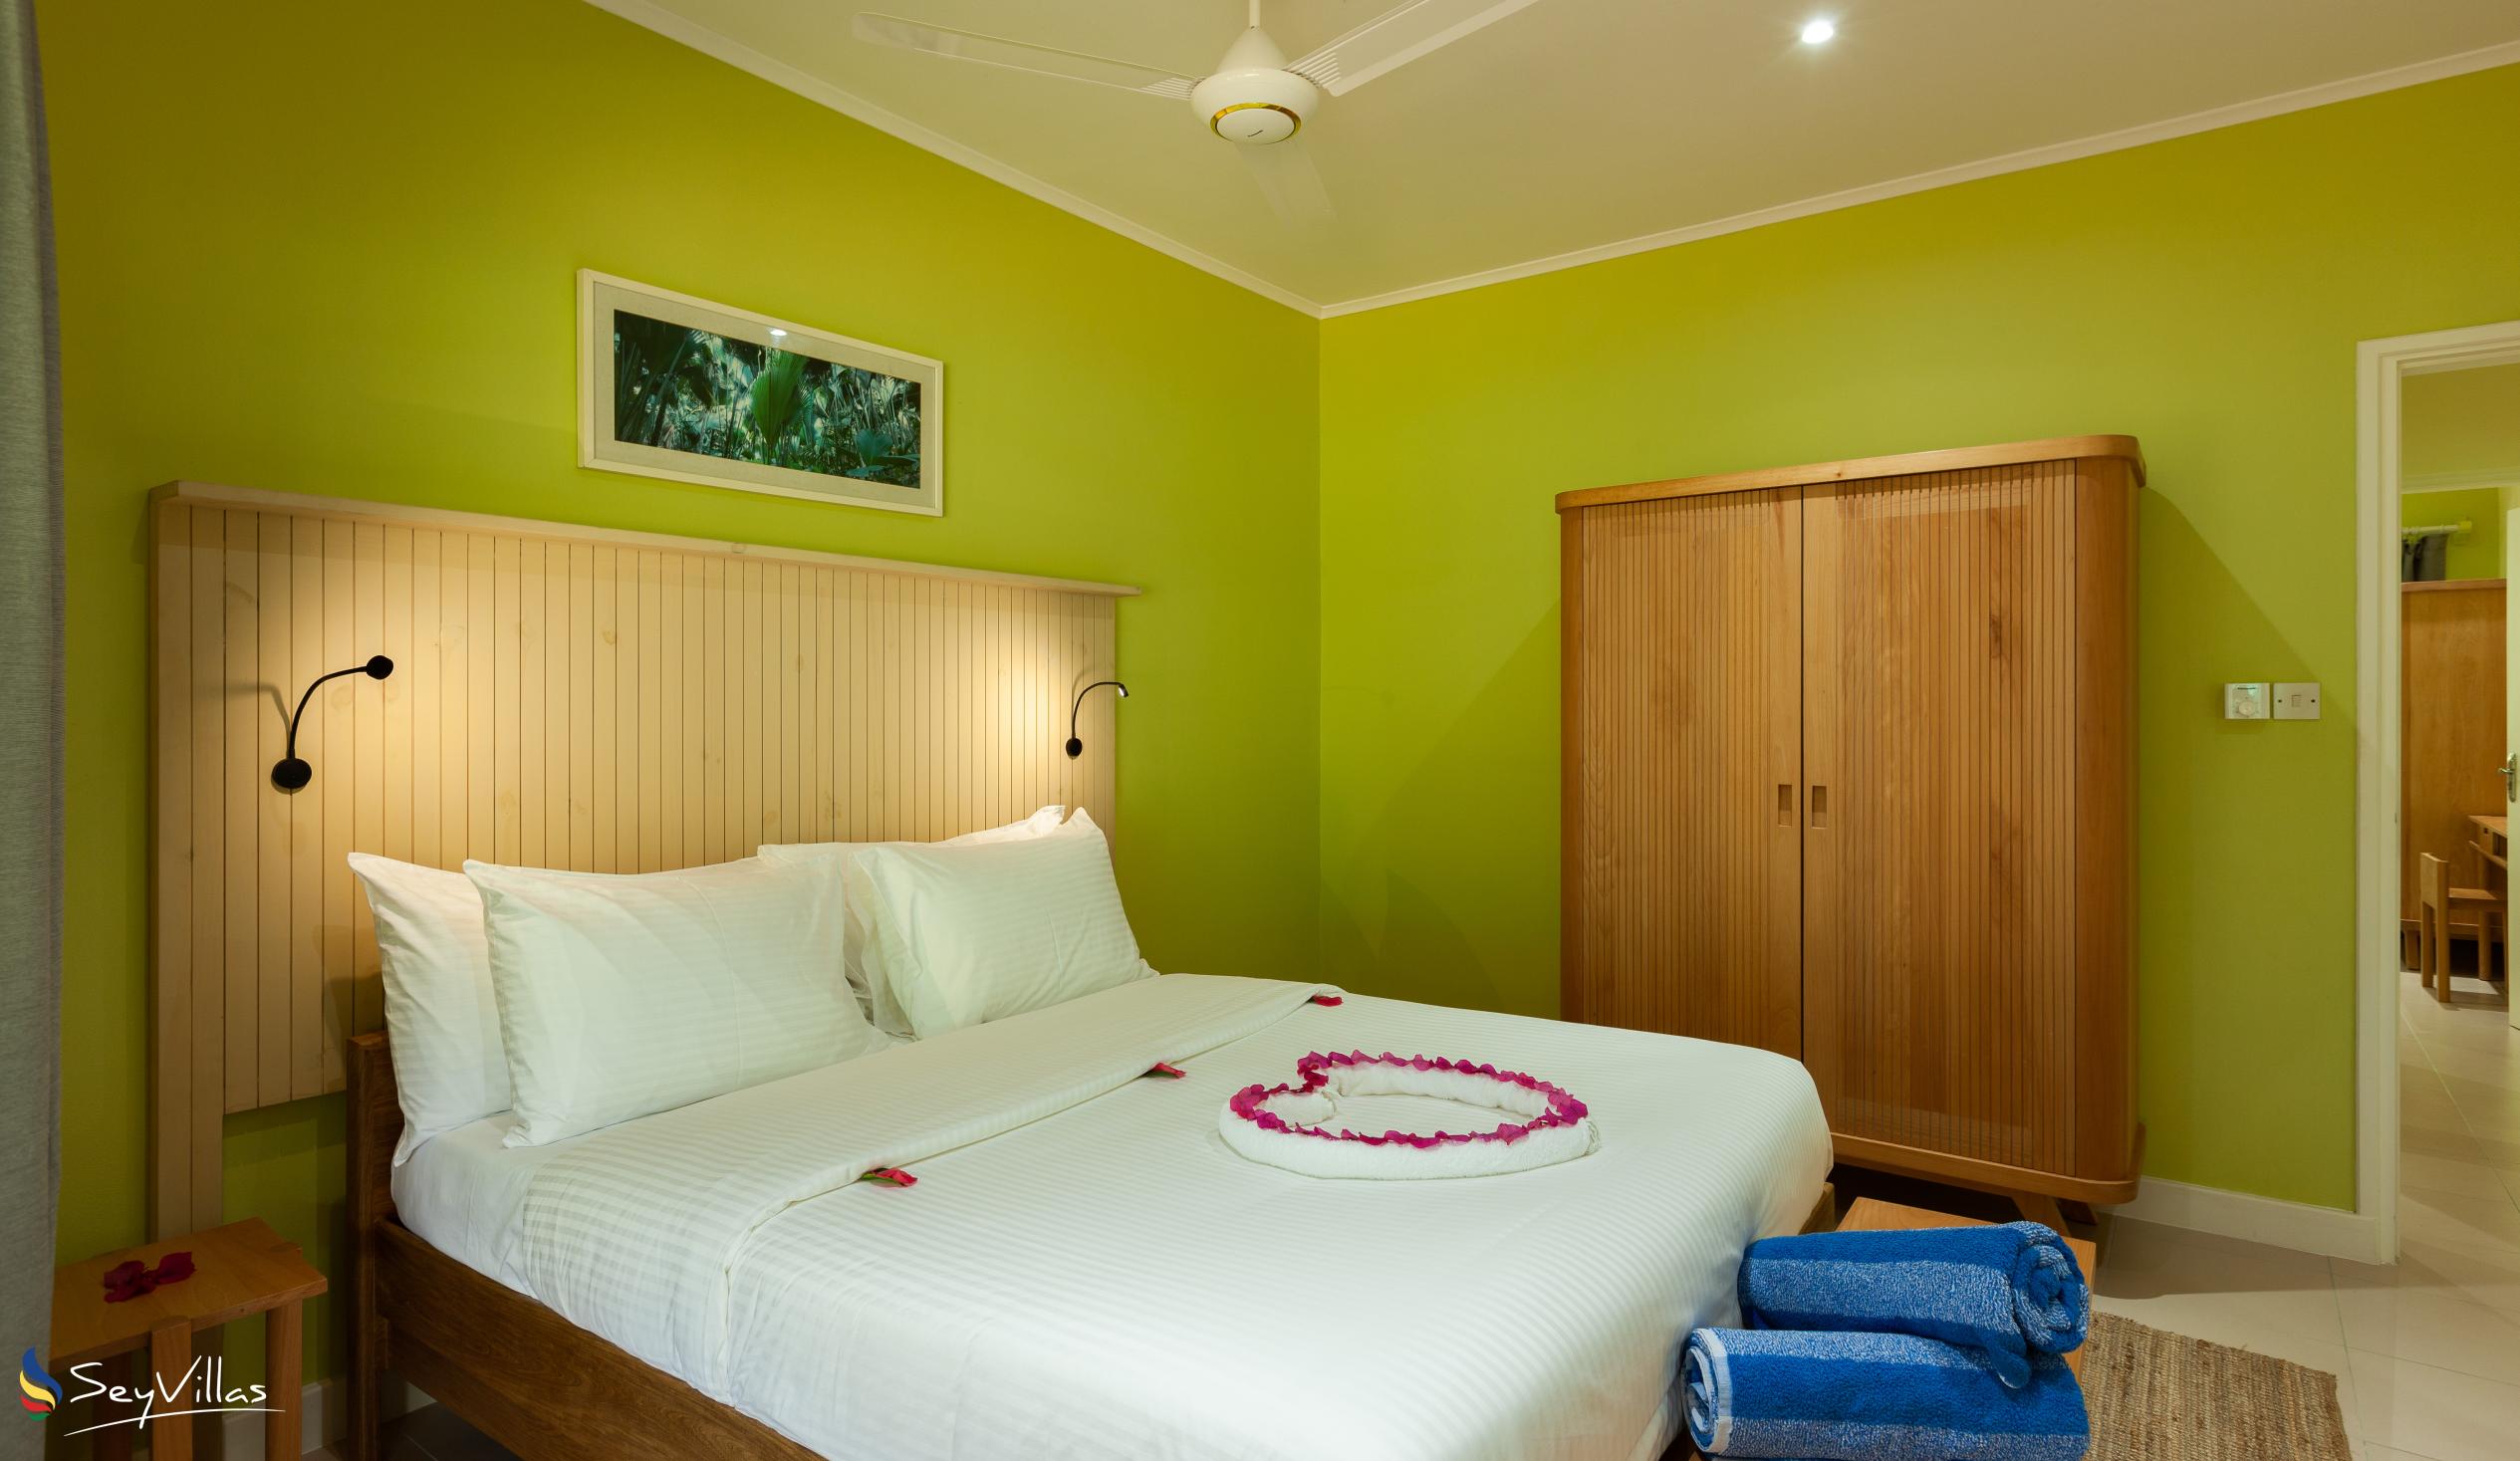 Foto 46: Residence Praslinoise - Familienappartement mit 2 Schlafzimmern (EG) - Praslin (Seychellen)